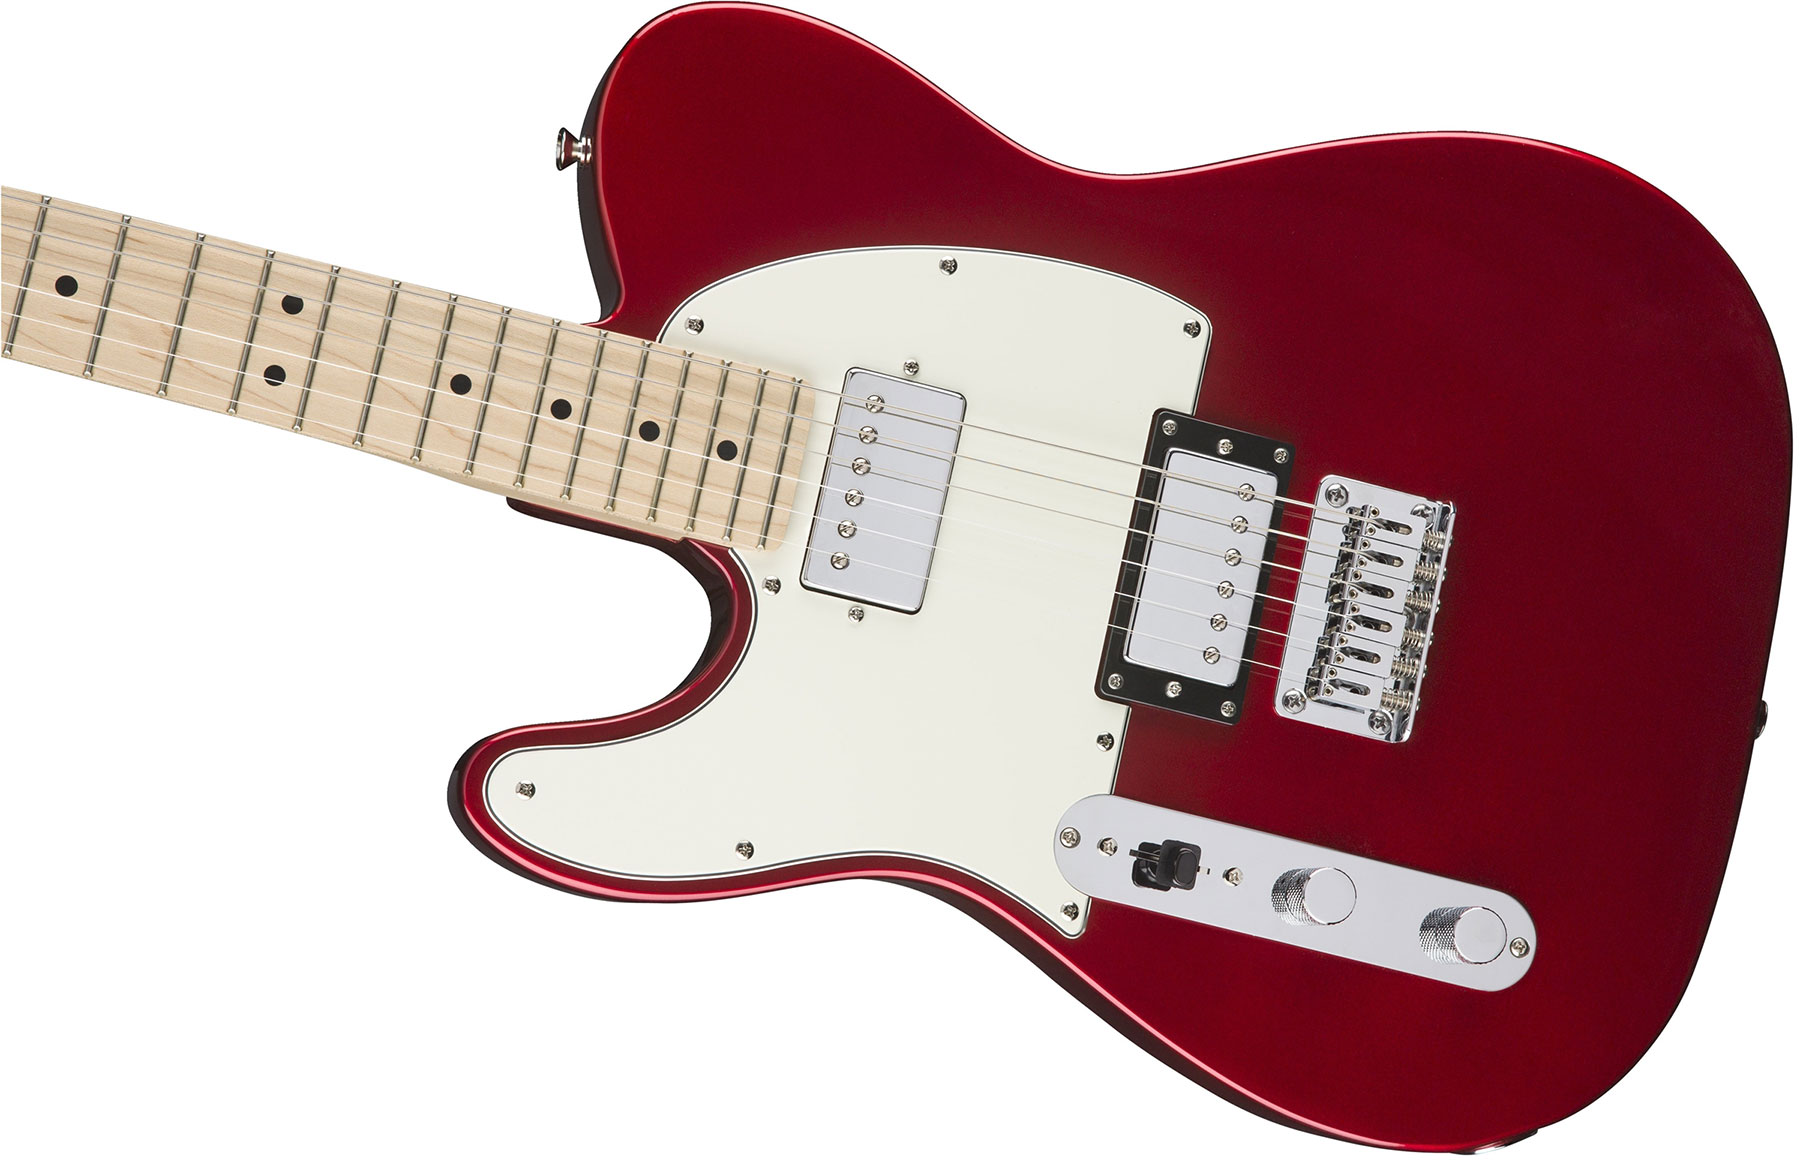 Squier Tele Contemporary Hh Lh Gaucher Mn - Dark Metallic Red - Left-handed electric guitar - Variation 2